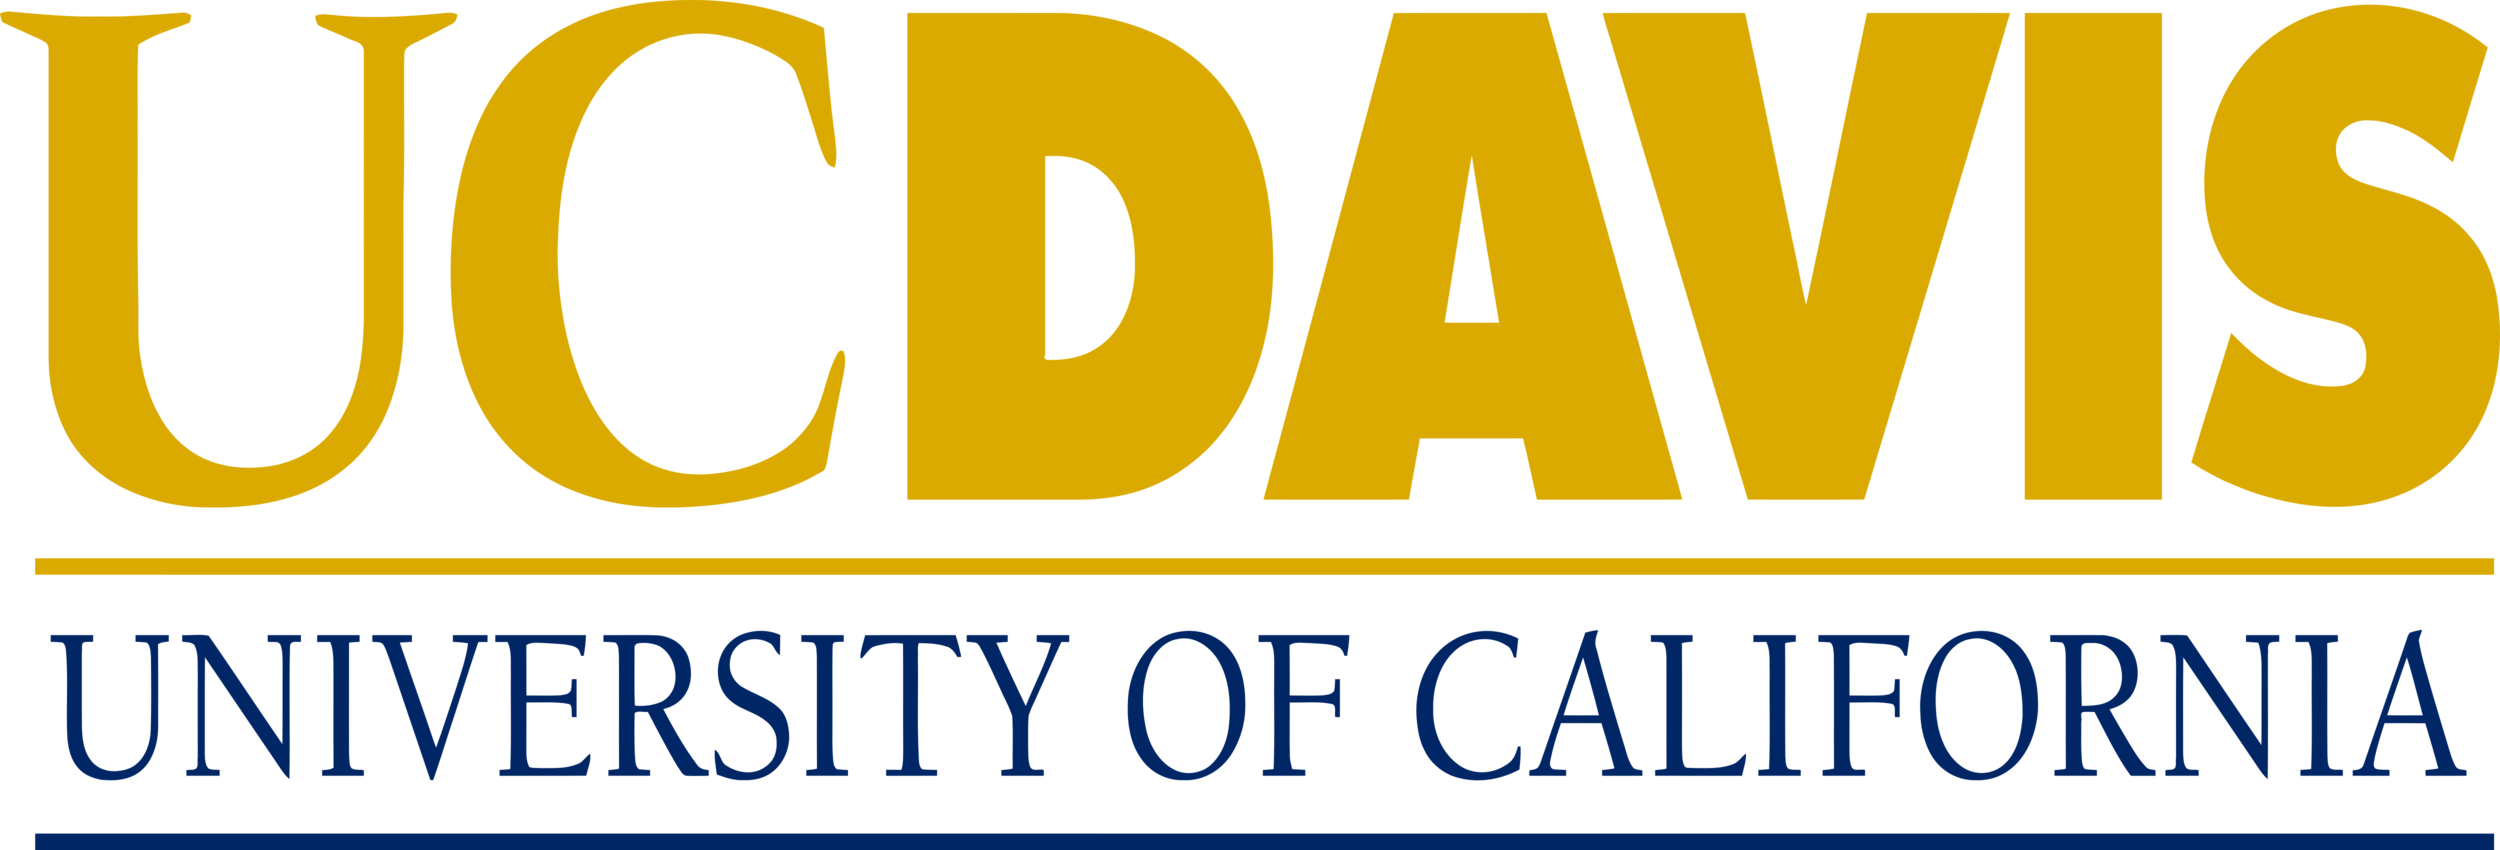 UC_Davis_Logo_text.png